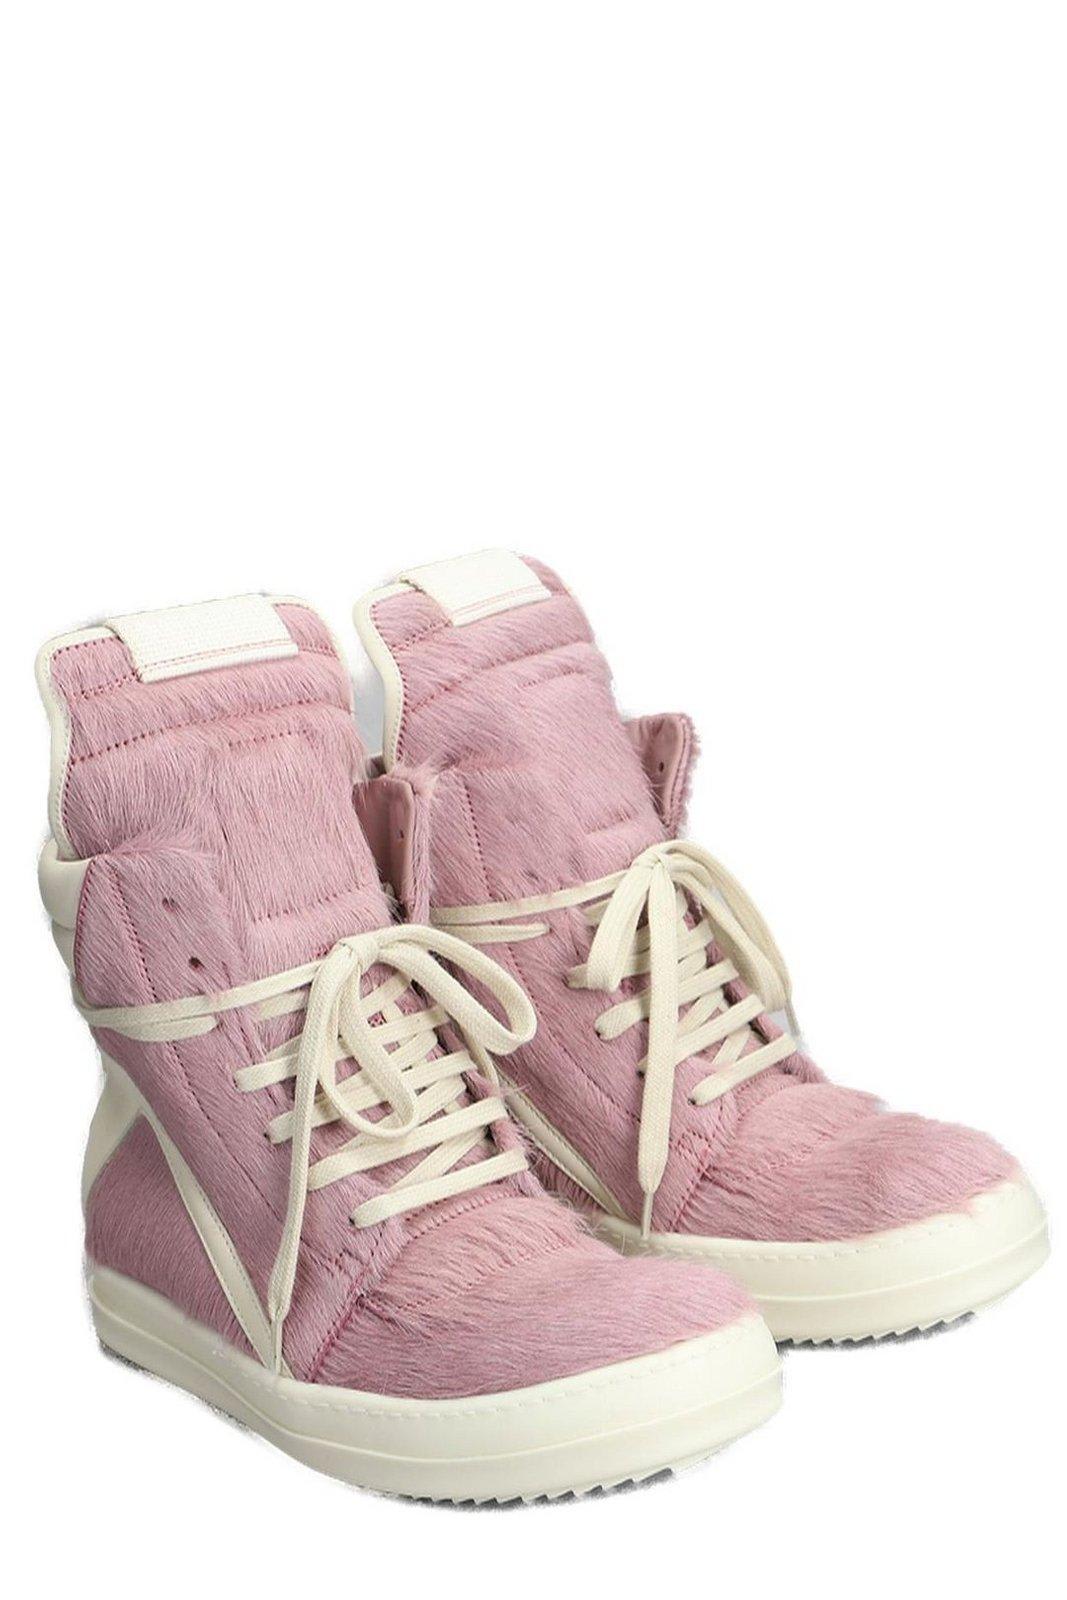 Shop Rick Owens Geobasket High-top Sneakers In Dusty Pink Milk